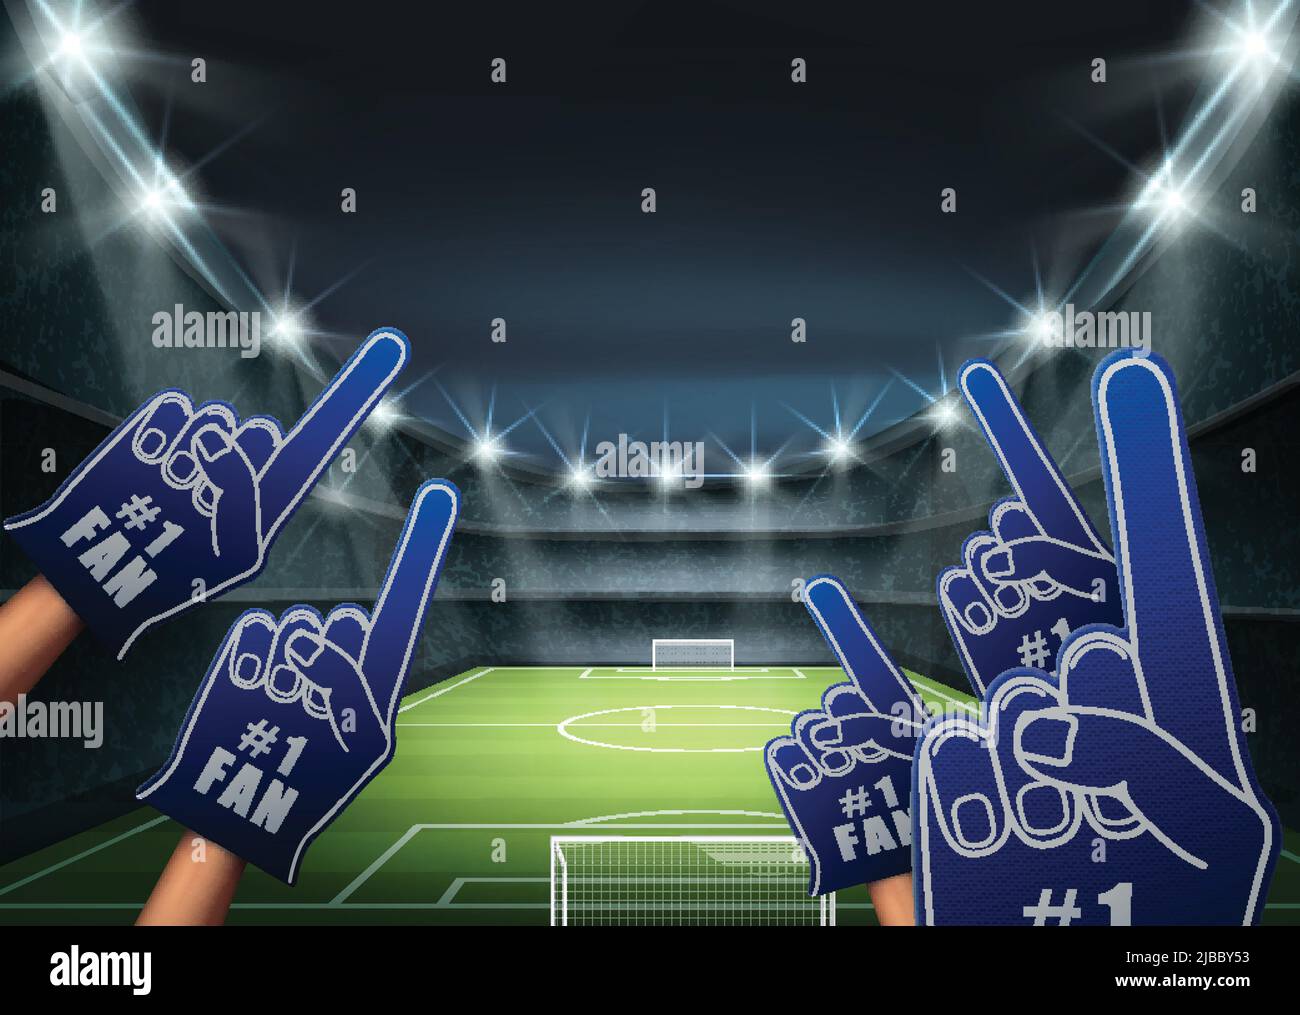 L'illustrazione vettoriale dei tifosi sulla tribuna con i riflettori luminosi illumina il campo di calcio verde. Illustrazione Vettoriale